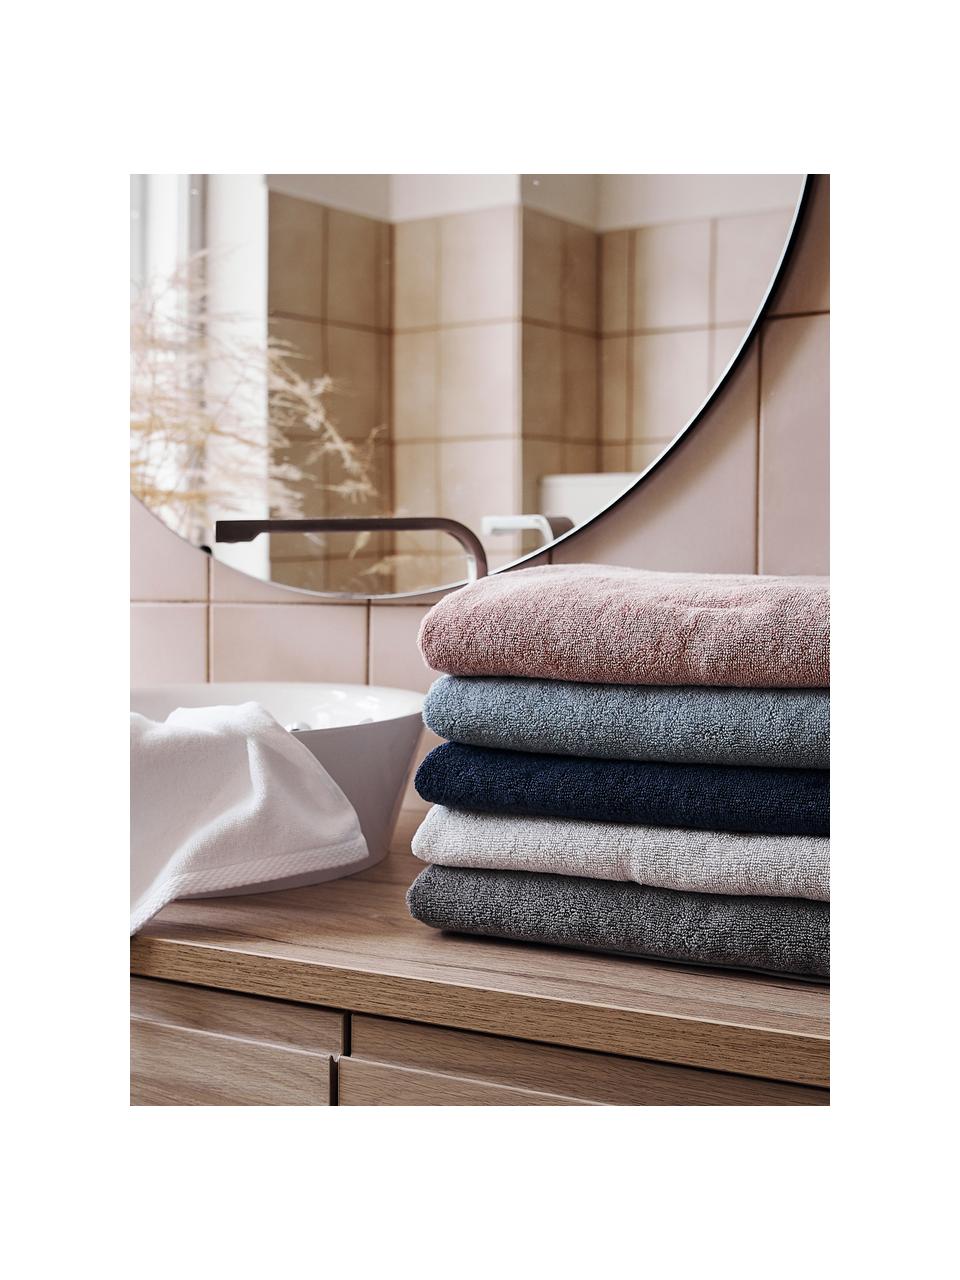 Eenkleurige handdoek Comfort, verschillende formaten, Lichtblauw, Handdoek, B 50 x L 100 cm, 2 stuks